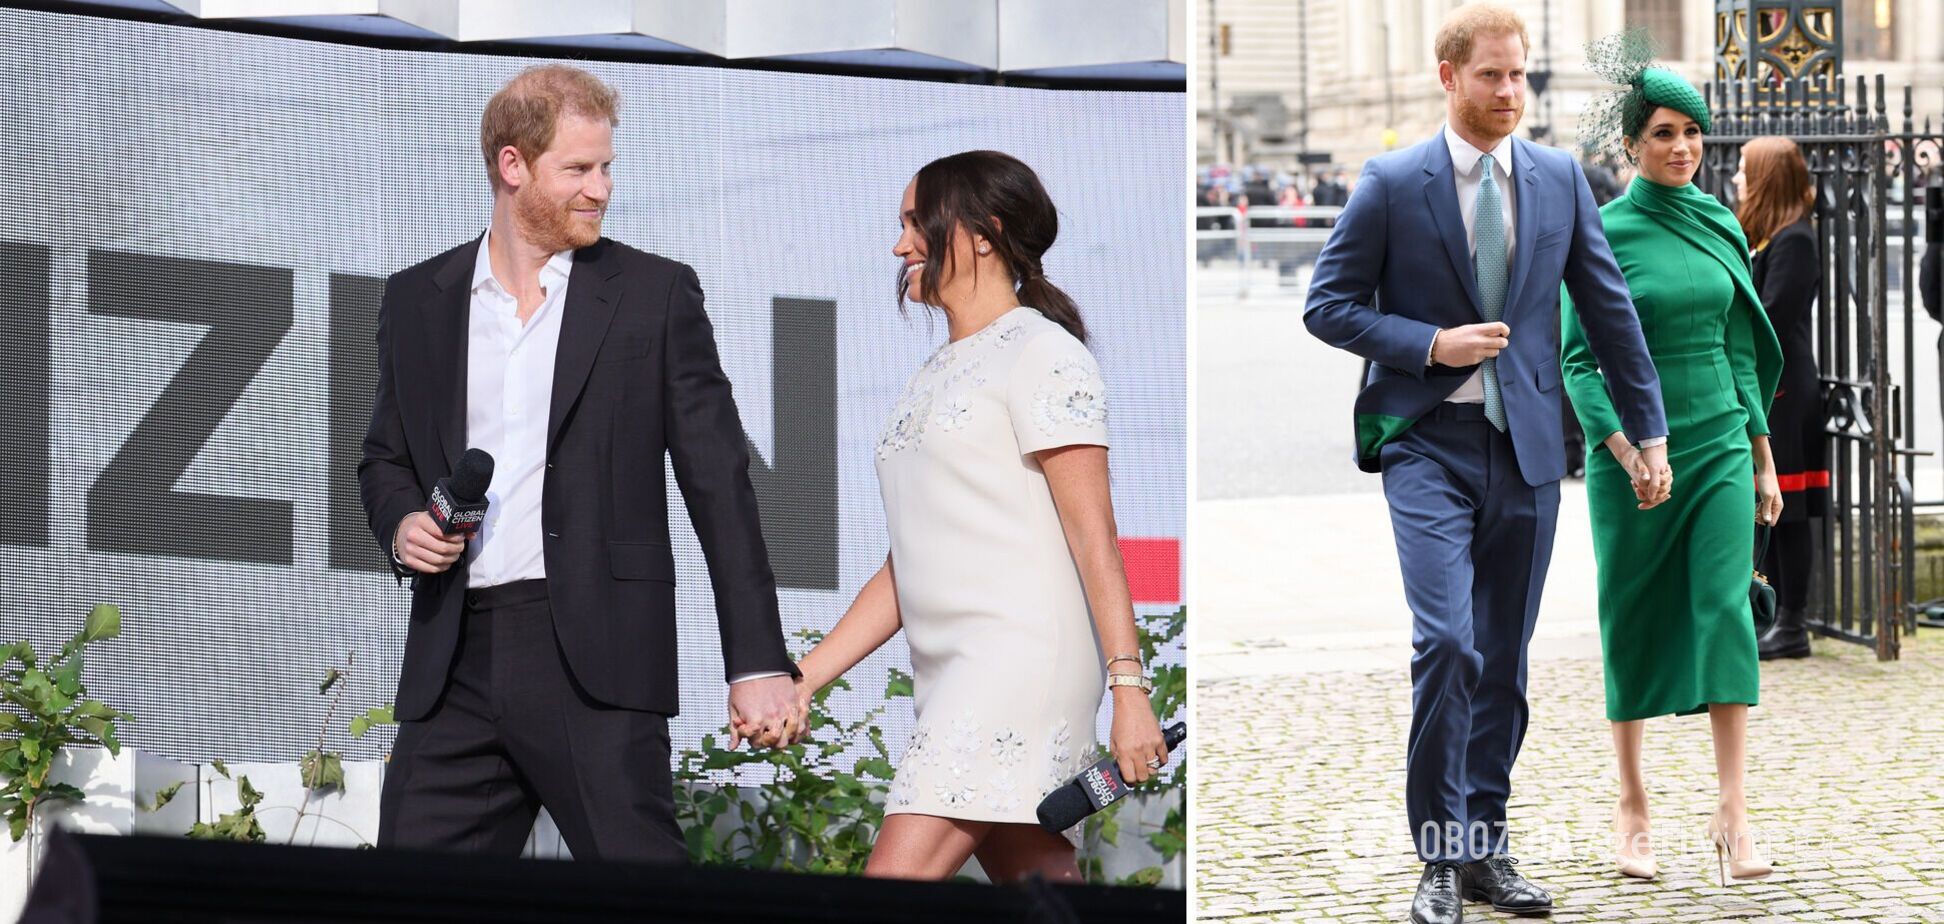 Експерт із мови тіла пояснив, чому Меган Маркл і принц Гаррі завжди тримаються за руки